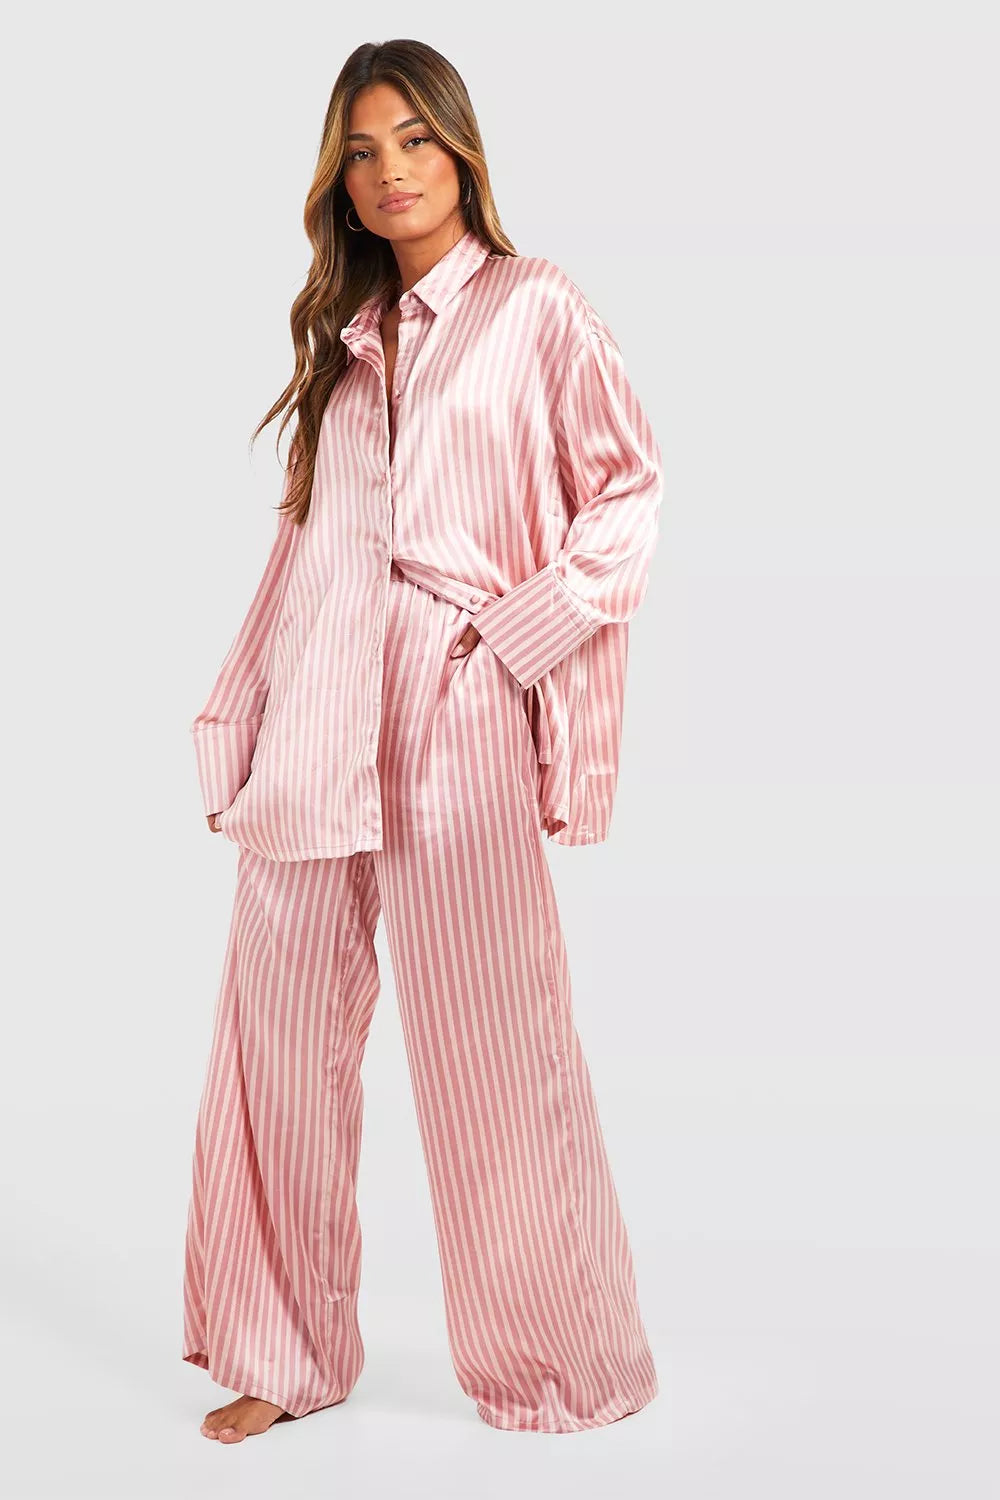 Oversized PinkStripe Pajama Set